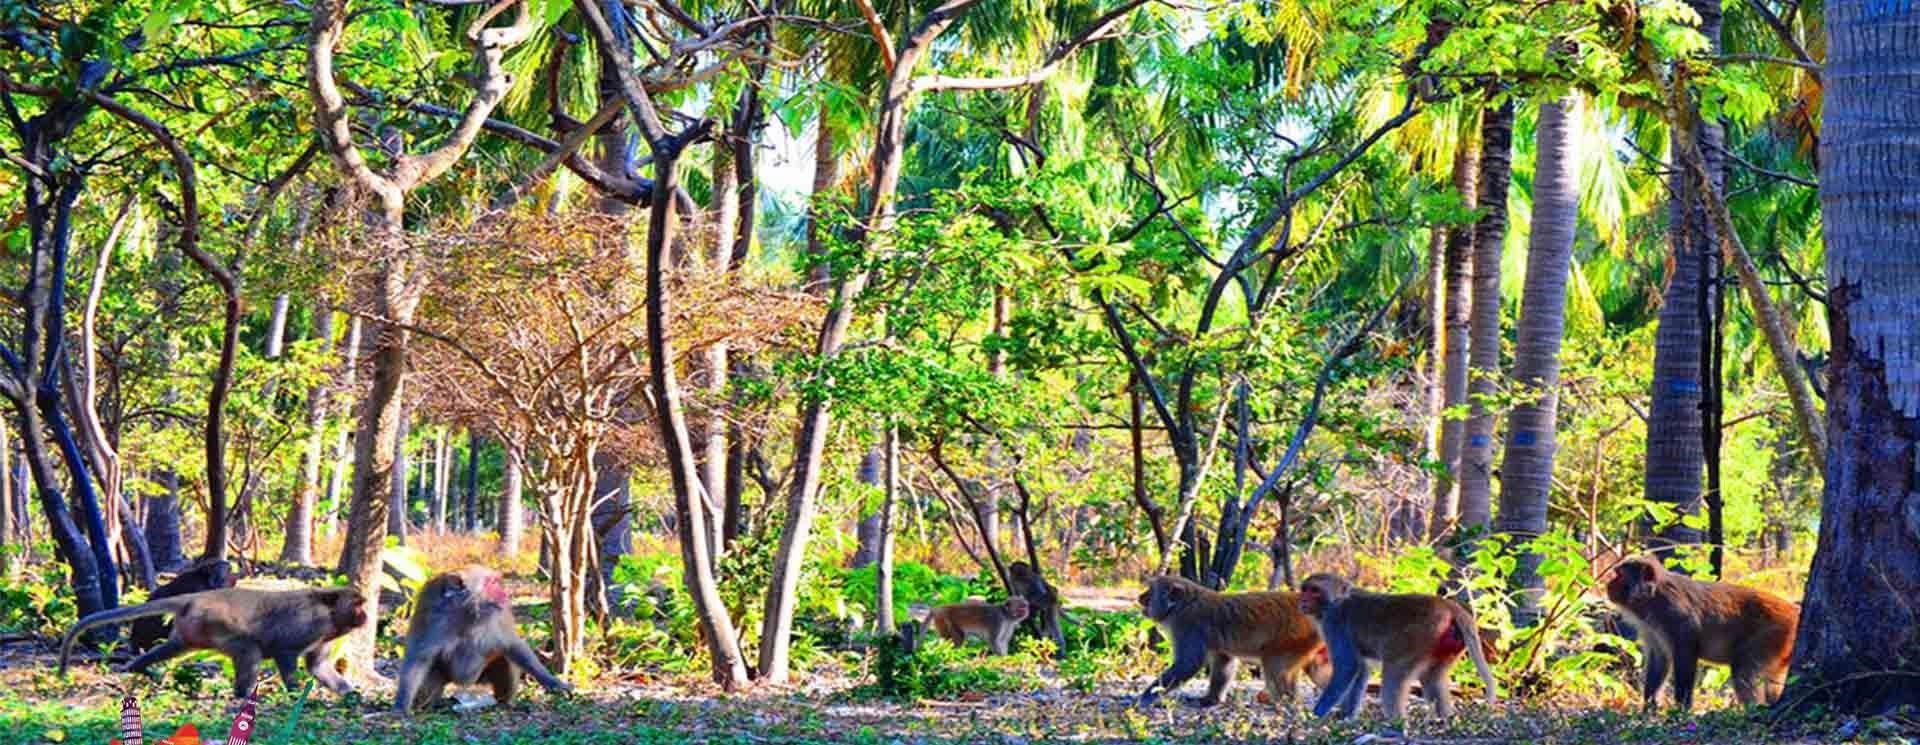 Đảo Khỉ là một khu du lịch nổi tiếng ở Khánh Hoà, nơi mà du khách có thể tận hưởng không chỉ cảnh đẹp của biển xanh mà còn được tham quan và gặp gỡ với những chú khỉ đáng yêu.